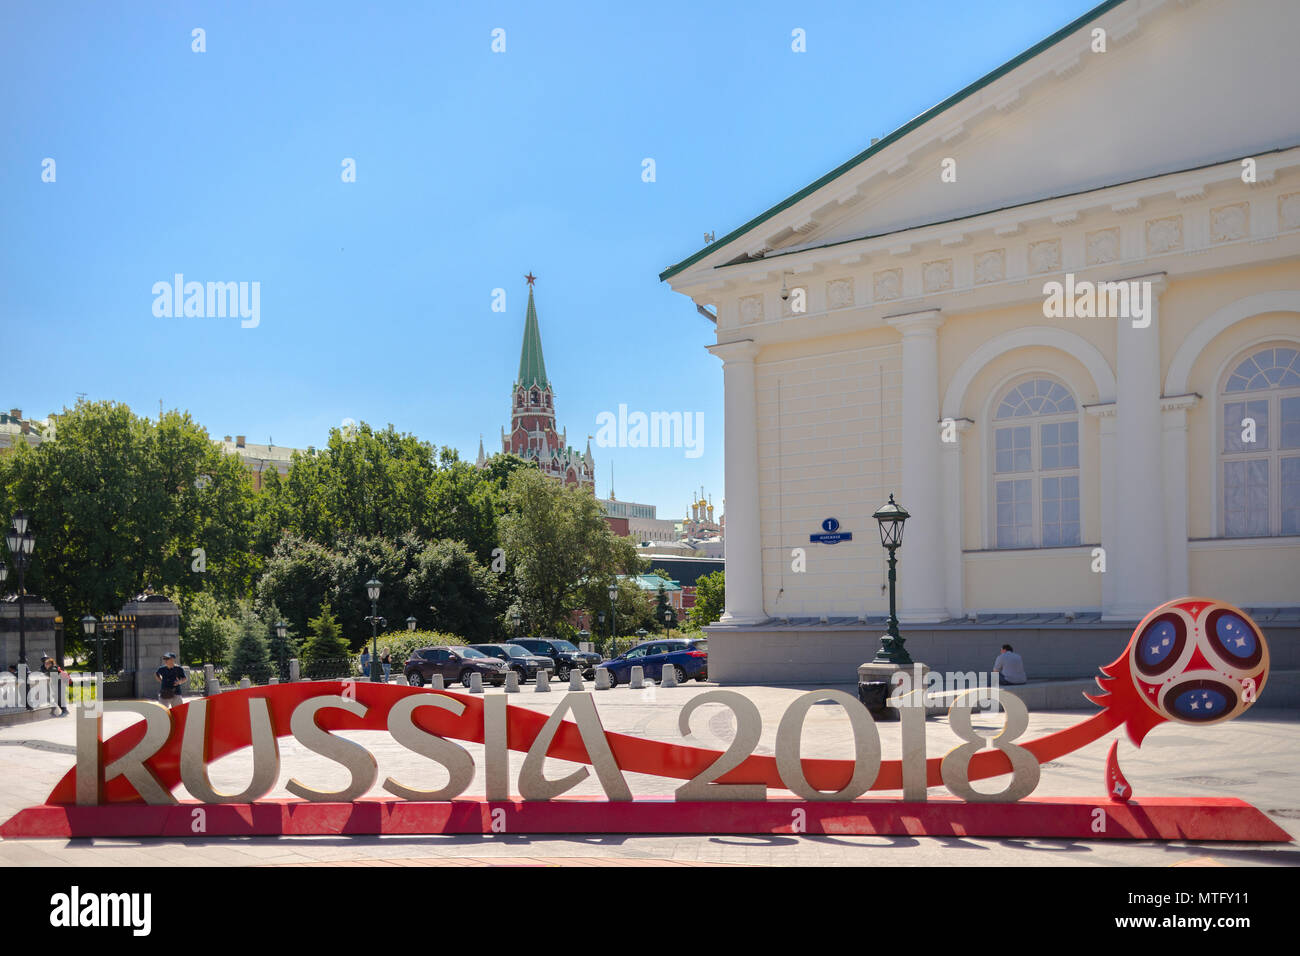 La scritta "Russia 2018' installato prima dell inizio della Coppa del Mondo FIFA in Piazza Manezh. La gente a piedi, il Cremlino e Manege Sq. in background. Foto Stock